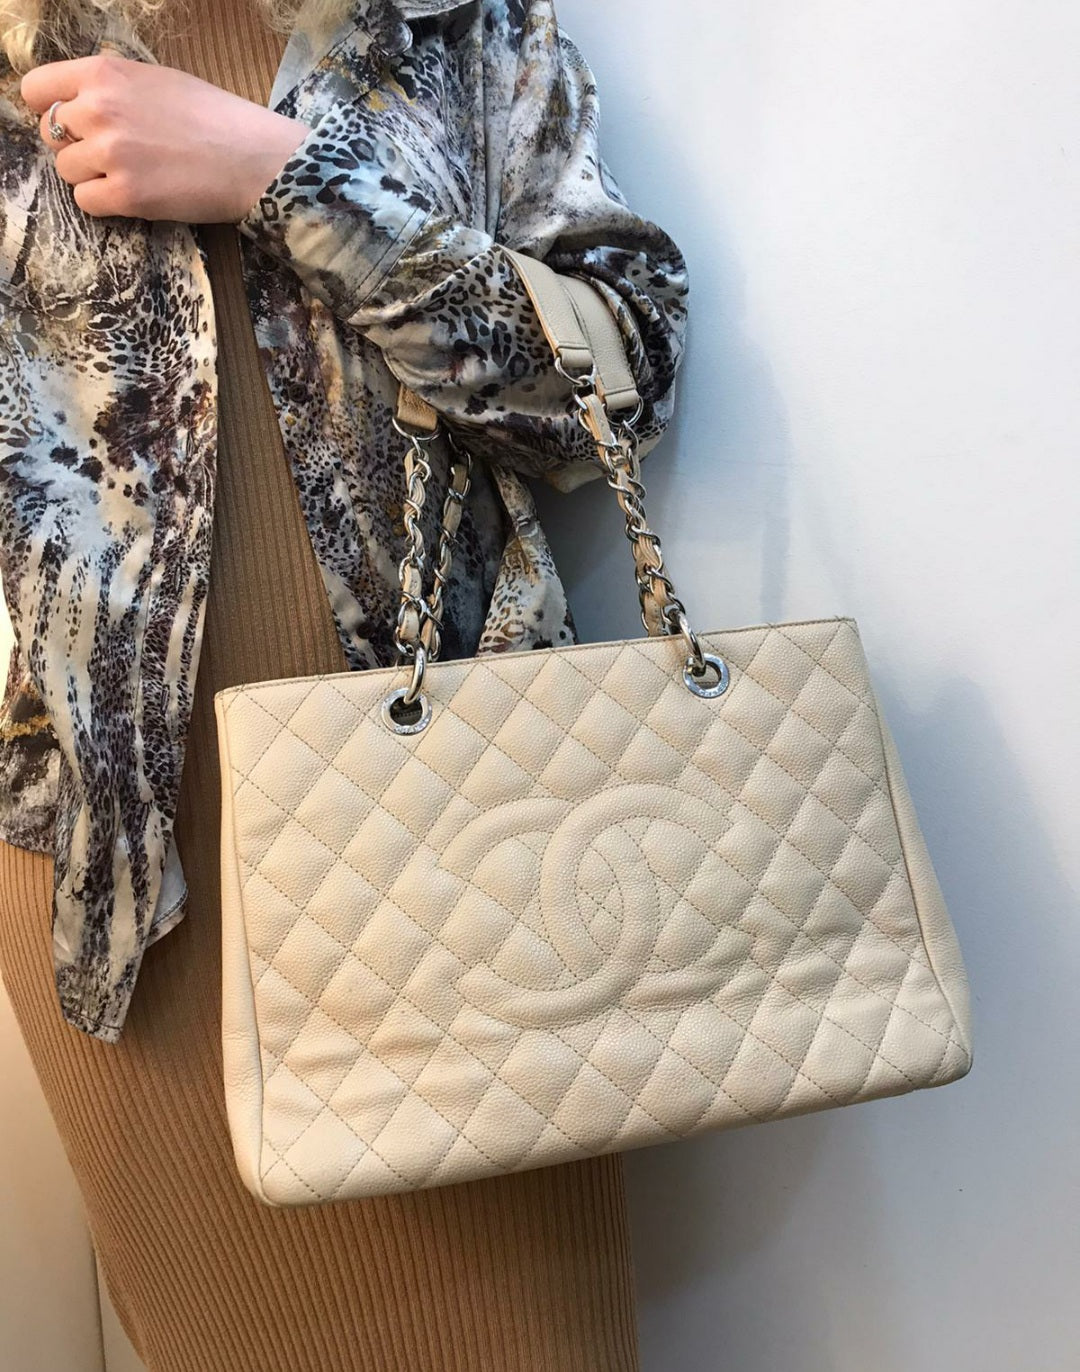 Chanel Beige GST Handbag - Siopaella Designer Exchange